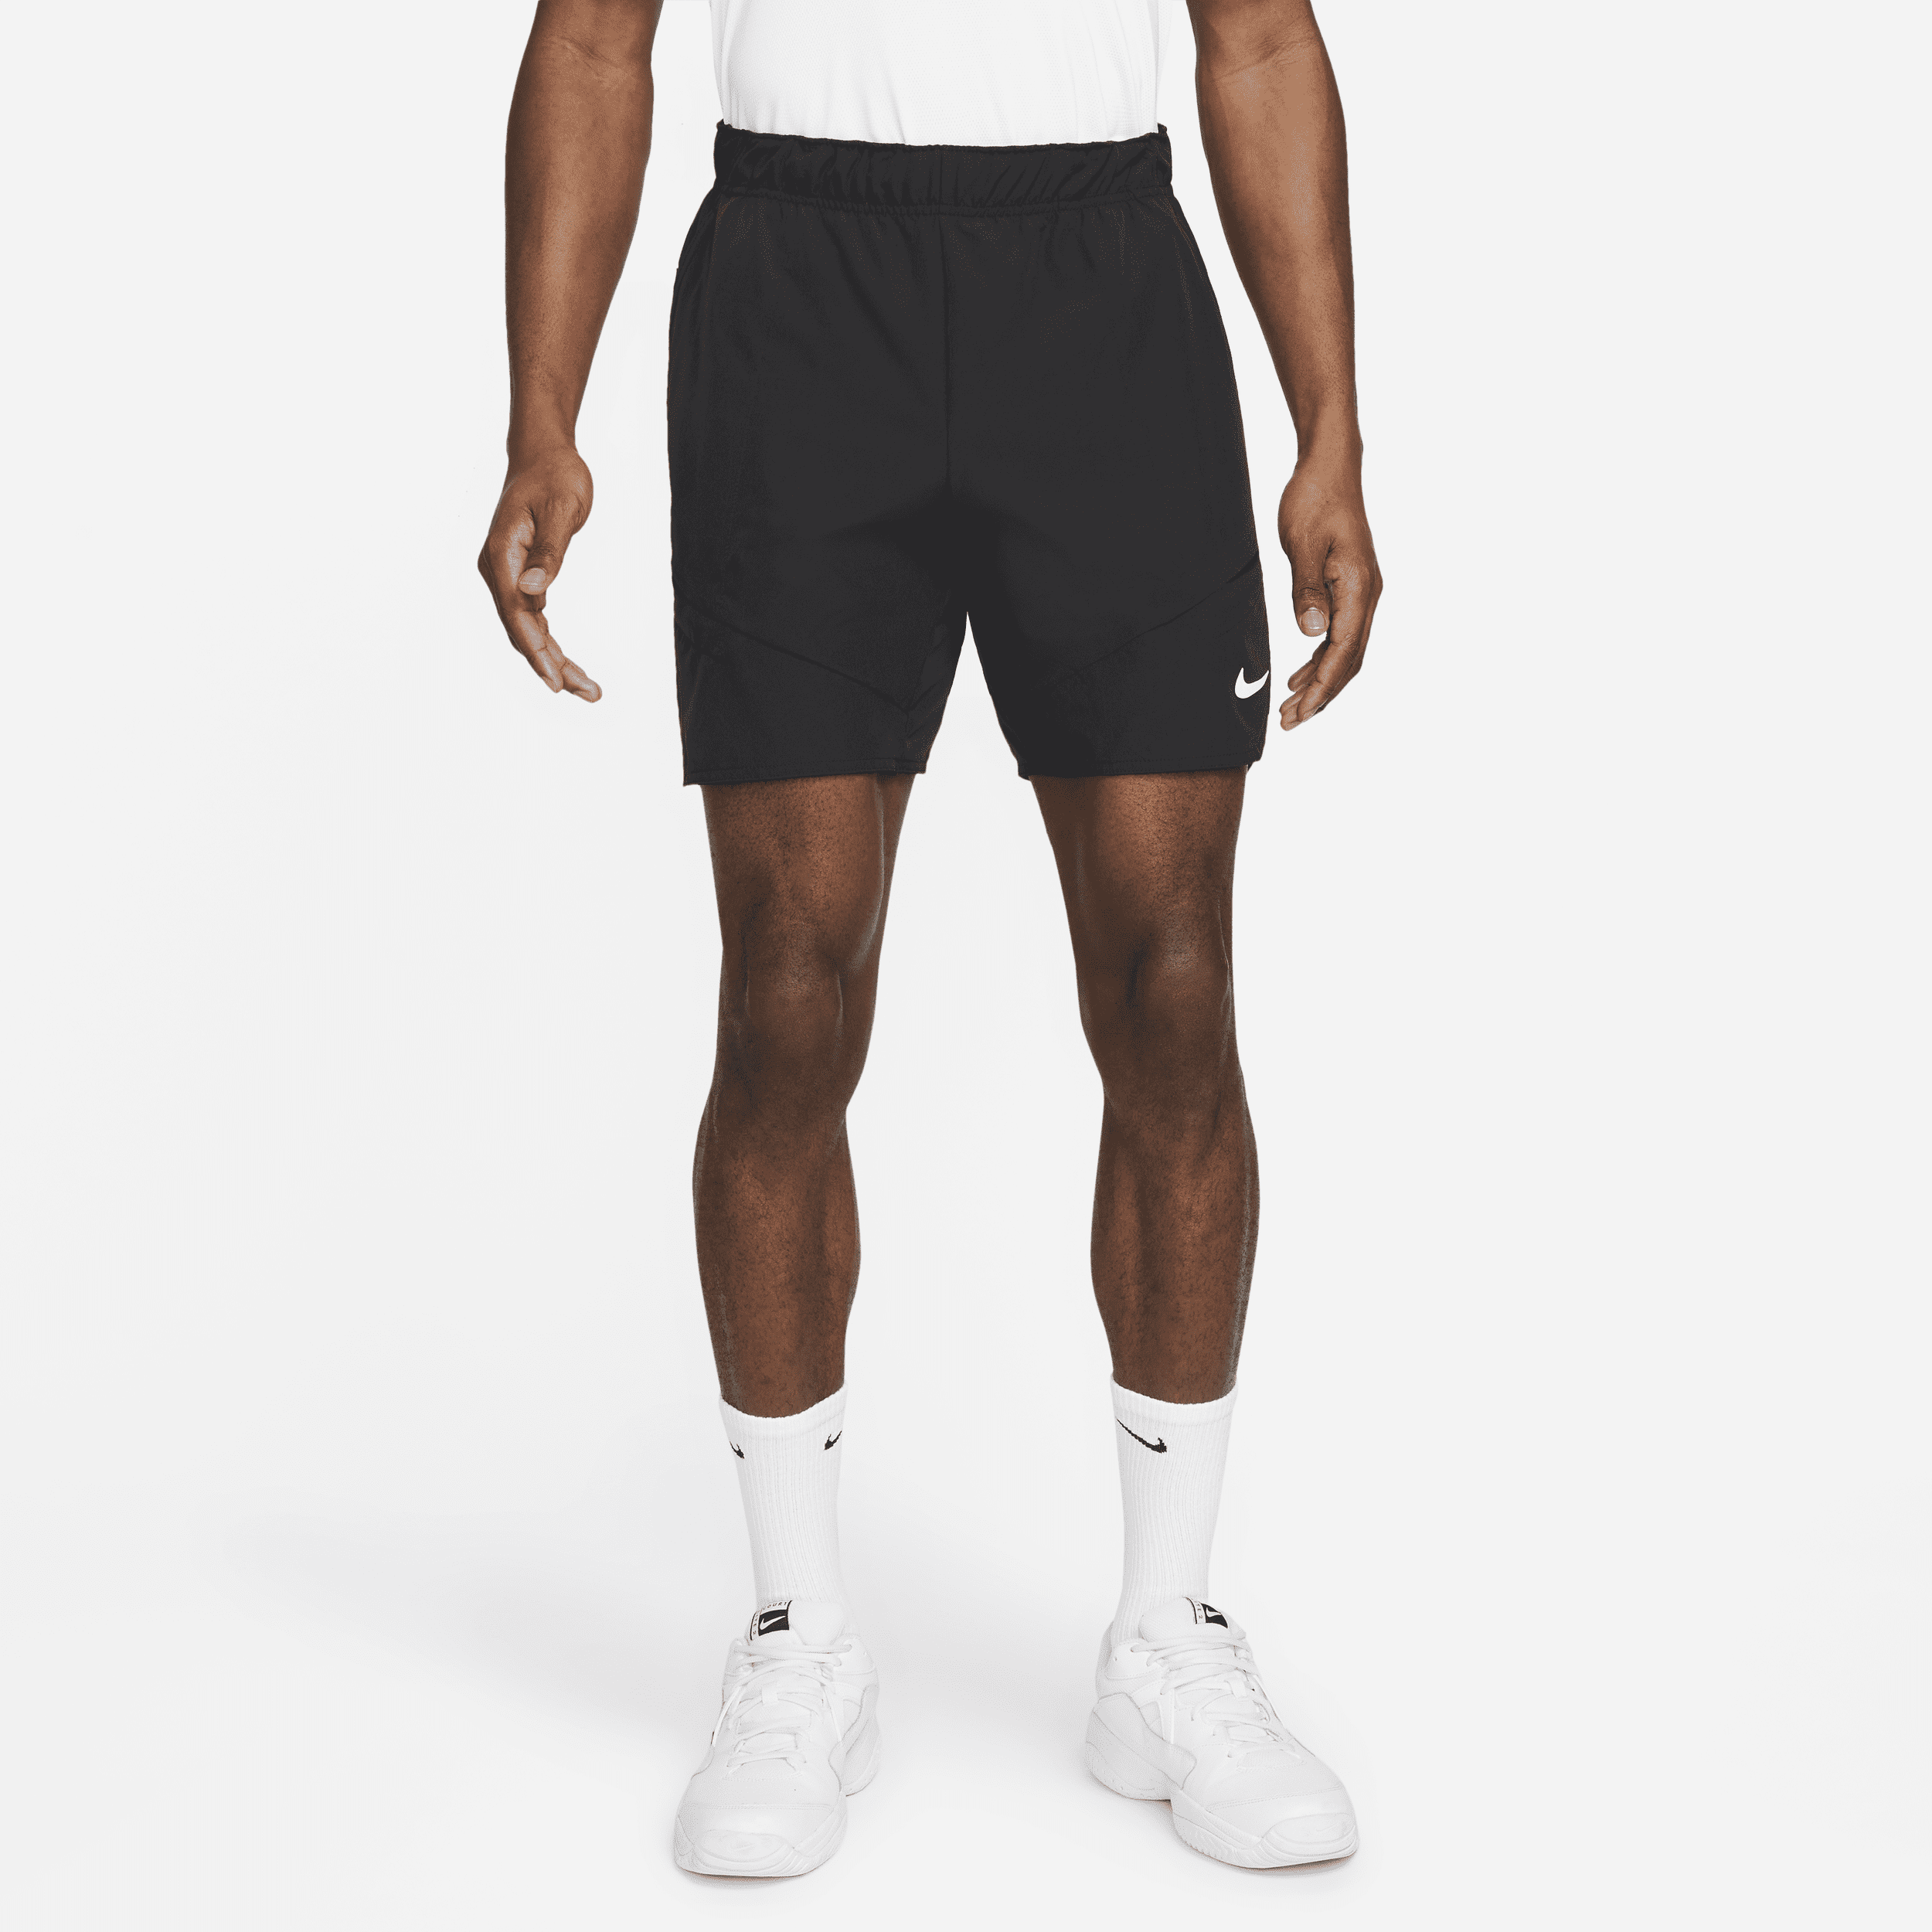 NikeCourt Dri-FIT Advantage-tennisshorts (18 cm) til mænd - sort